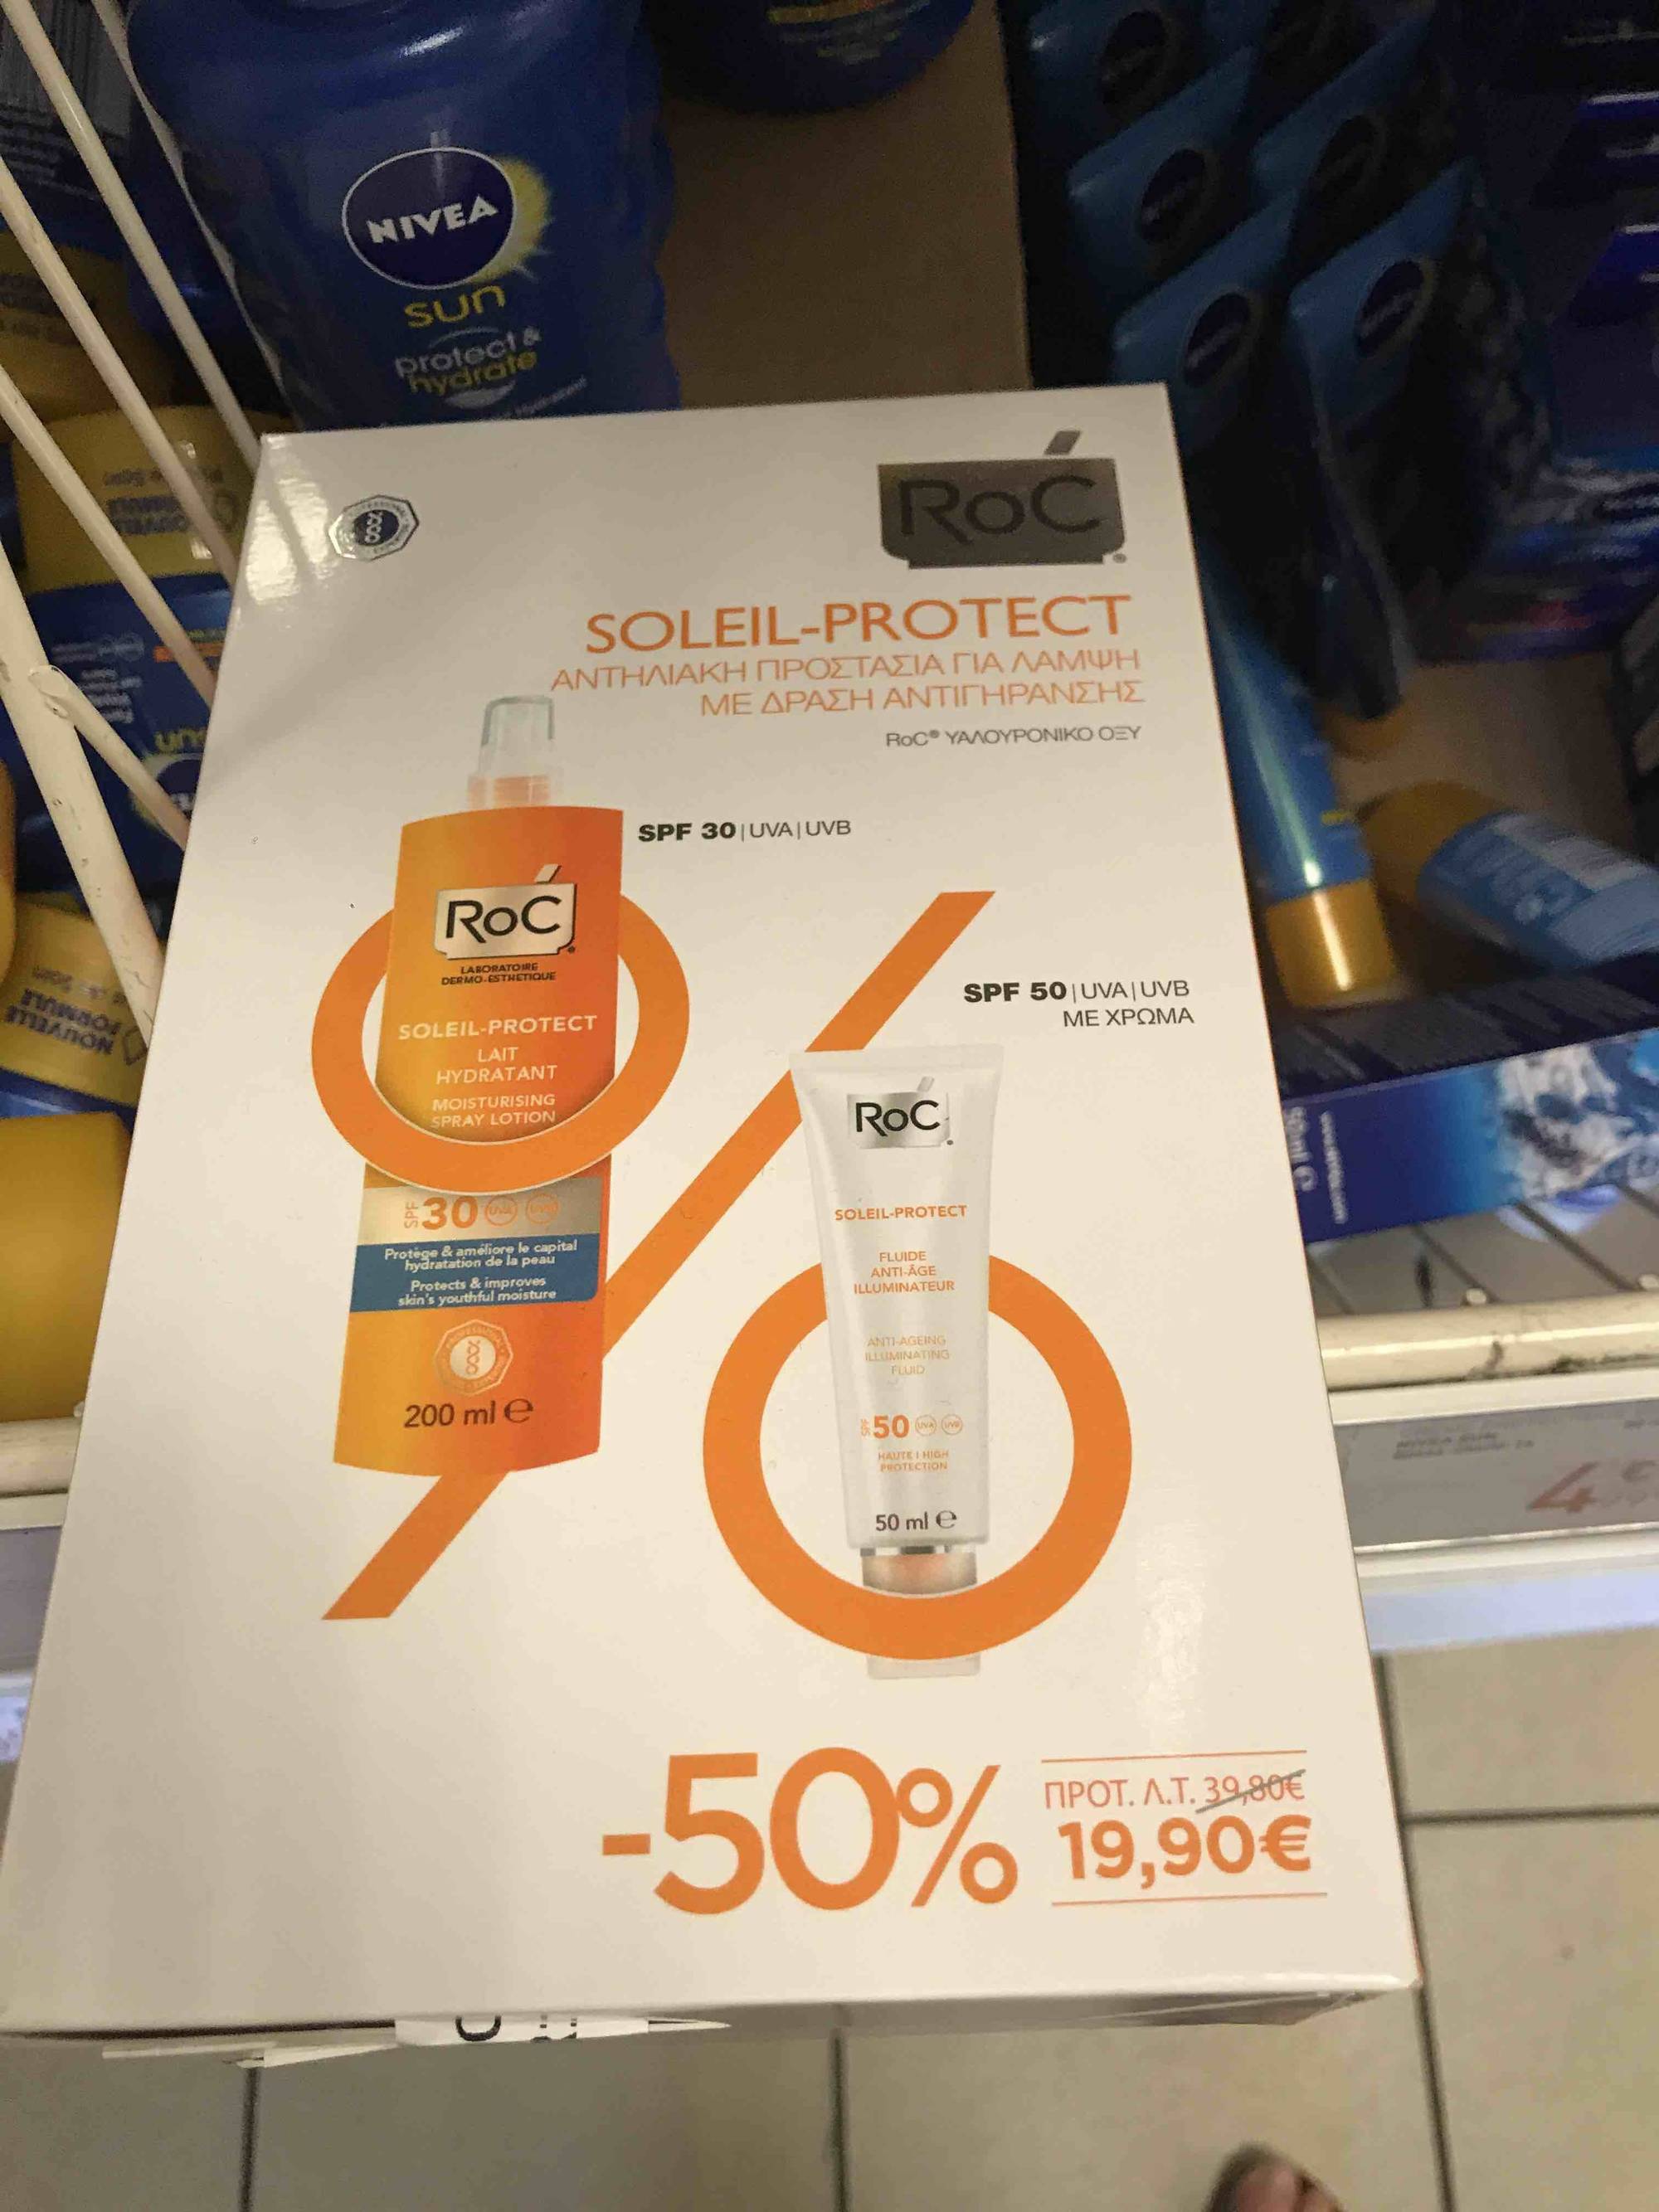 ROC - Soleil-protect - Lait hydratant spf30 + fluide anti-âge spf 50